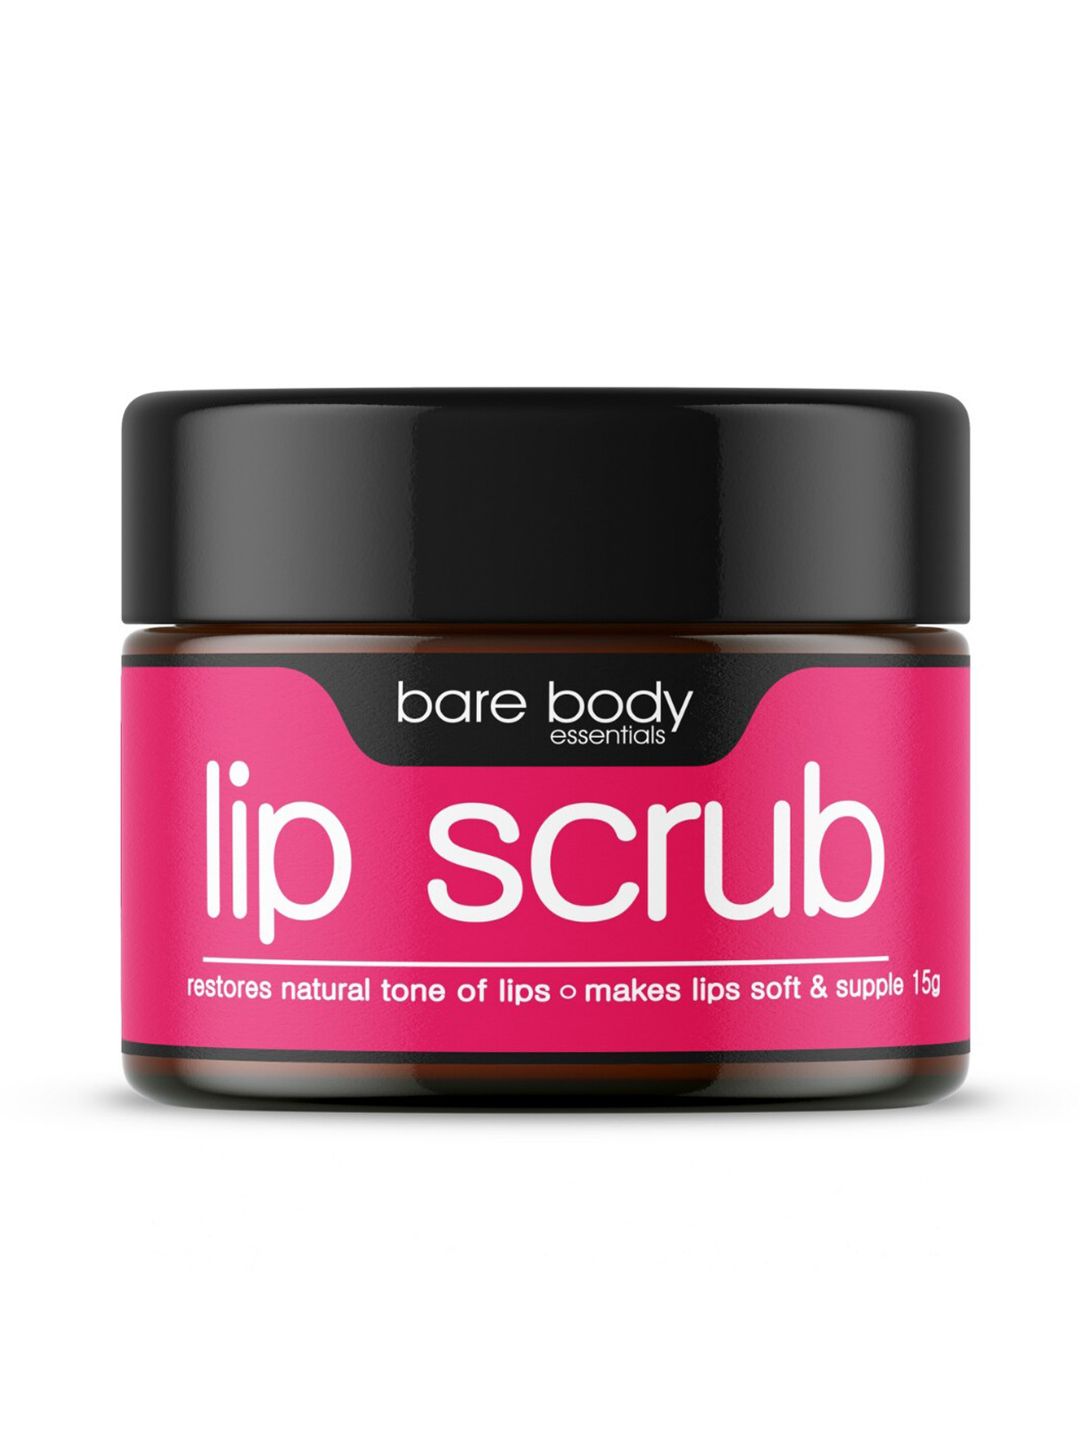 bare body essentials Lip Scrub 15g Price in India